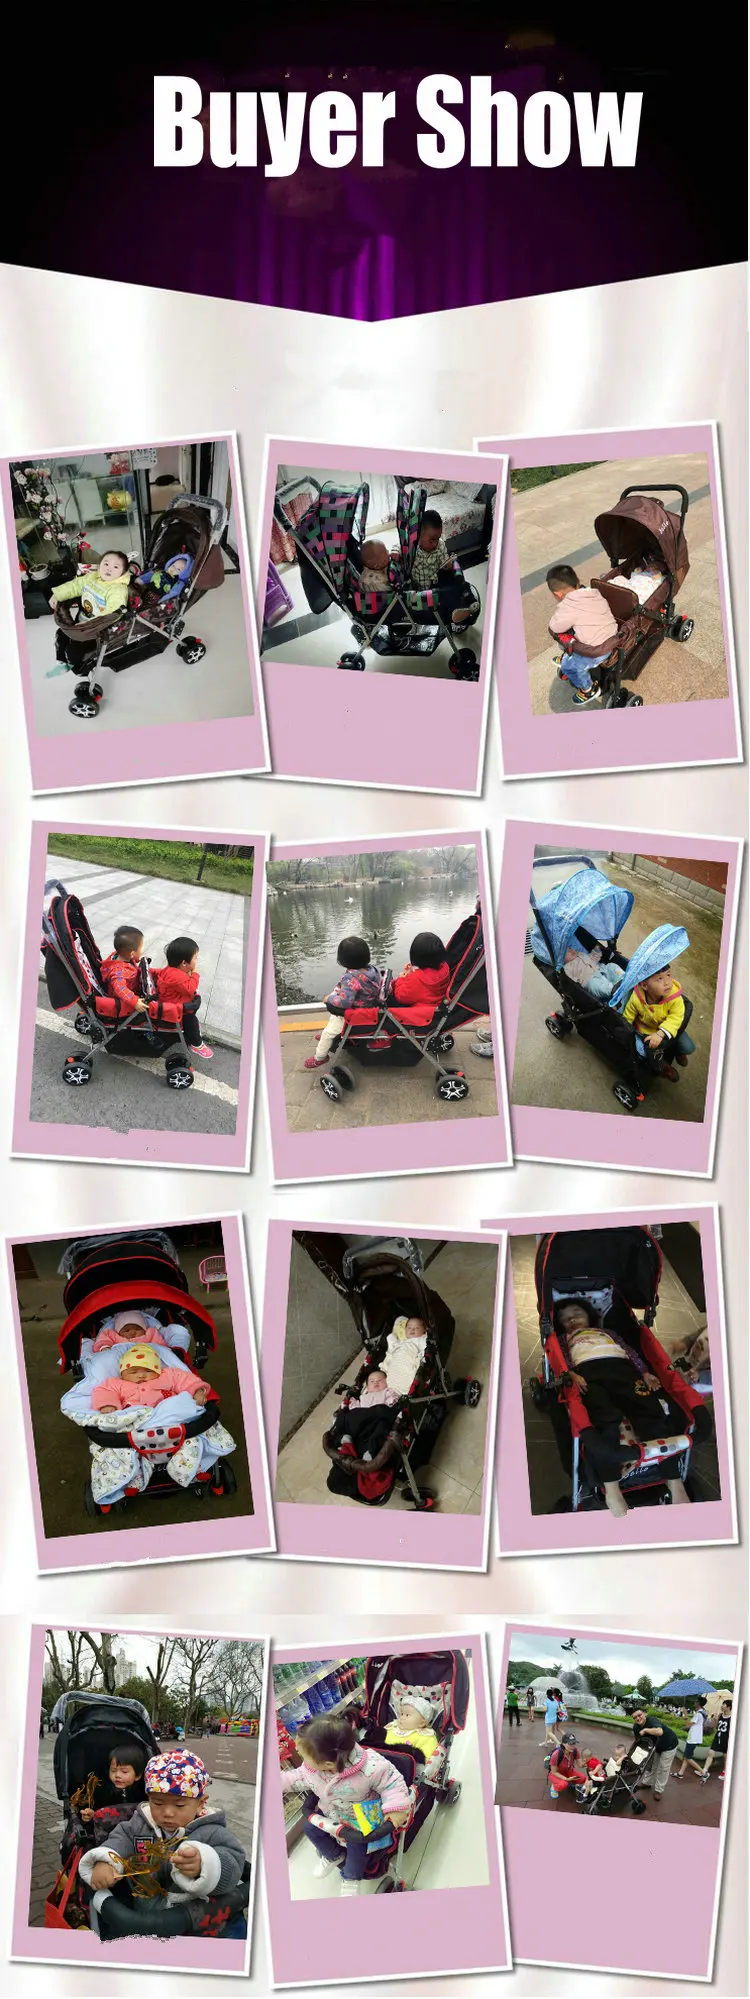 Легкий 9,6 кг двойная коляска костюм для 2 детей, сложенные близнецы коляска с регулируемым сиденьем, фиолетовая двойная коляска может сидеть